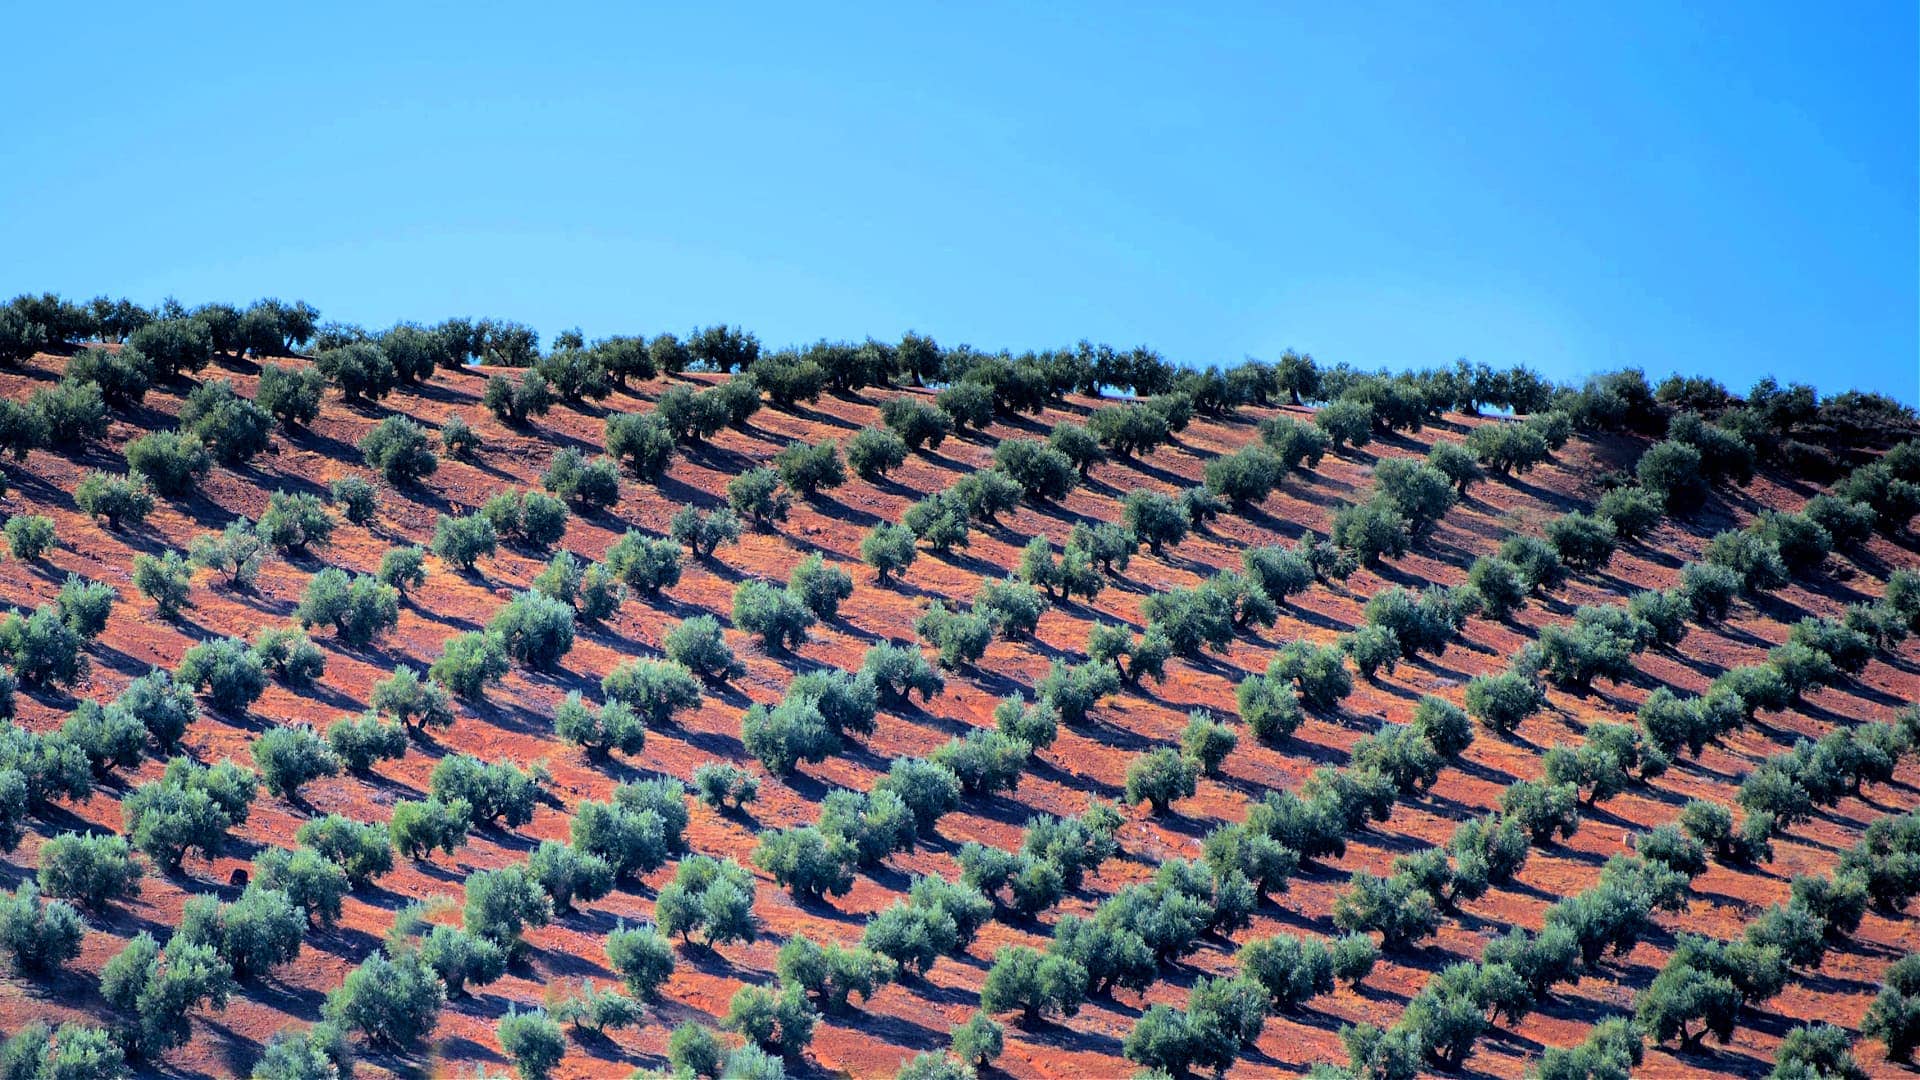 produzione-mondiale-come-impatto-agricoltura-intensiva-e-olivicoltura-suolo-salute-olio-di-oliva